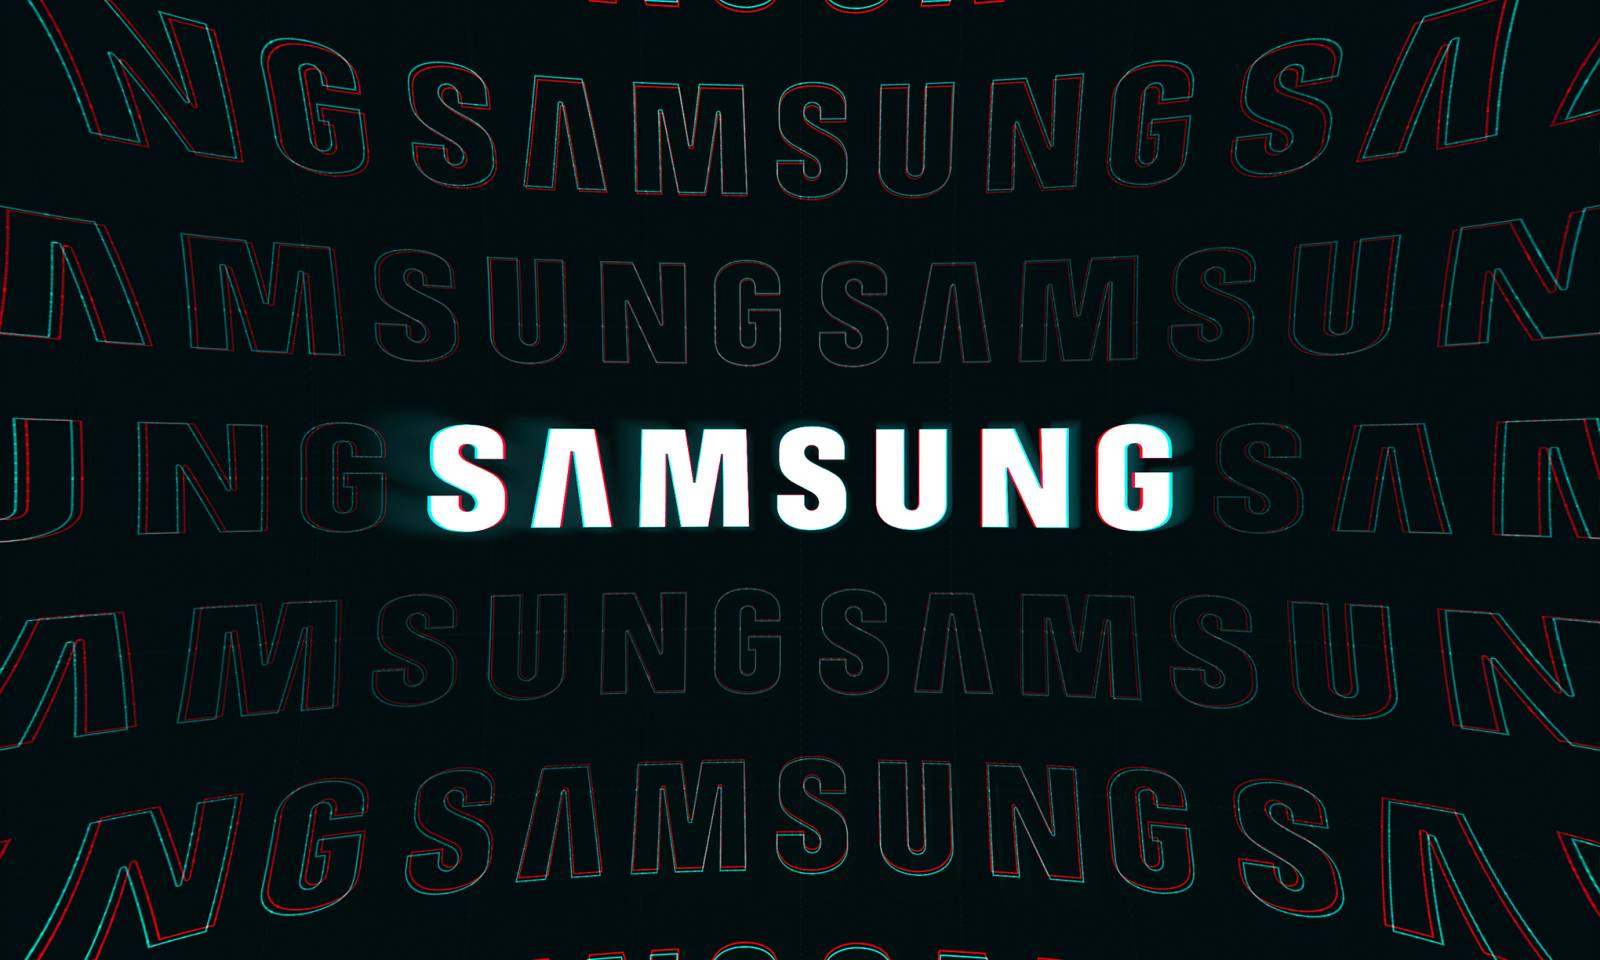 Samsung procesoare